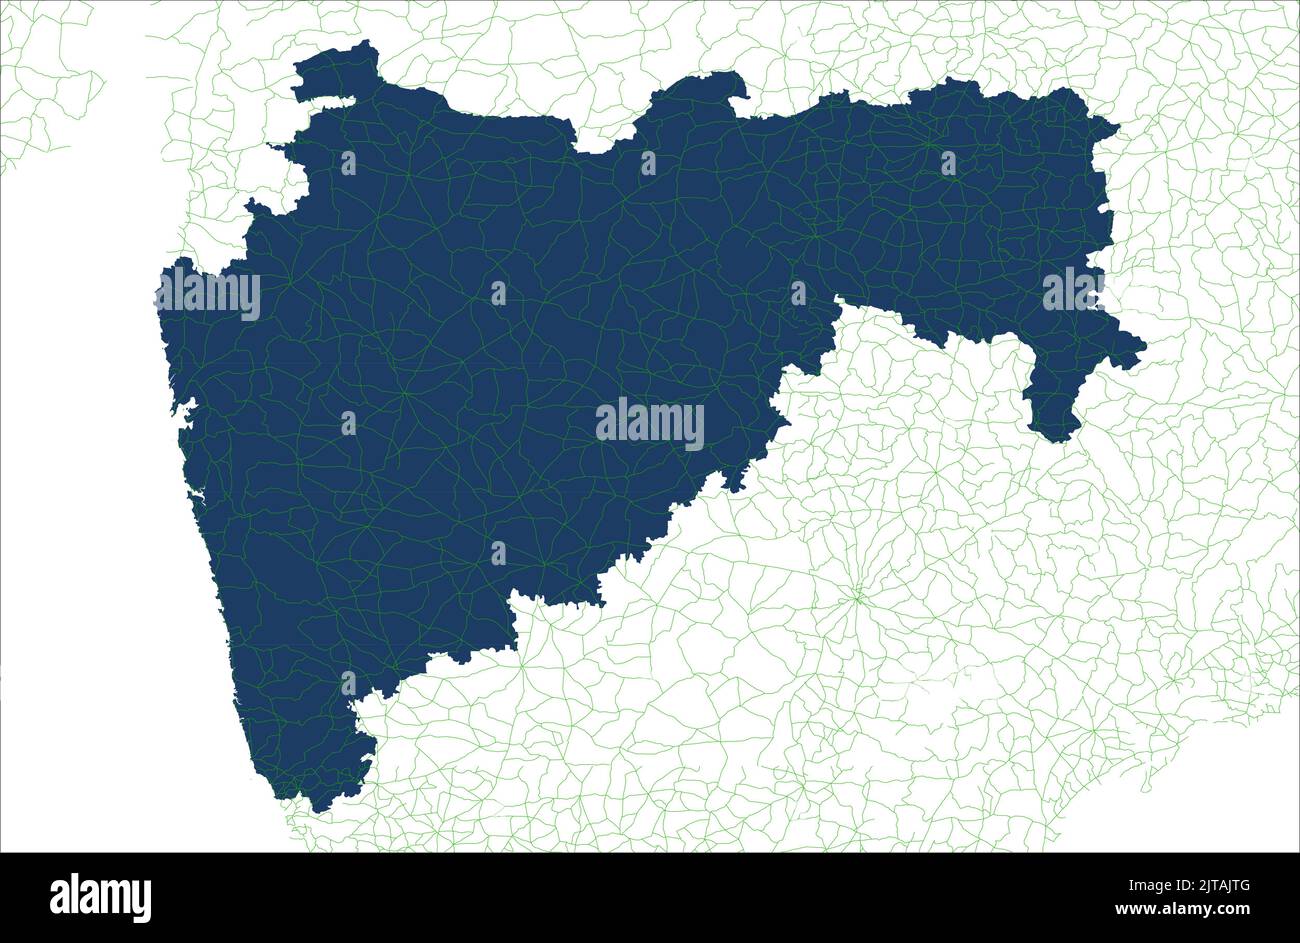 Zone de couverture routière de Maharastra India Illustration de la carte vectorielle sur fond blanc , zone routière de Maharastra india Illustration de Vecteur